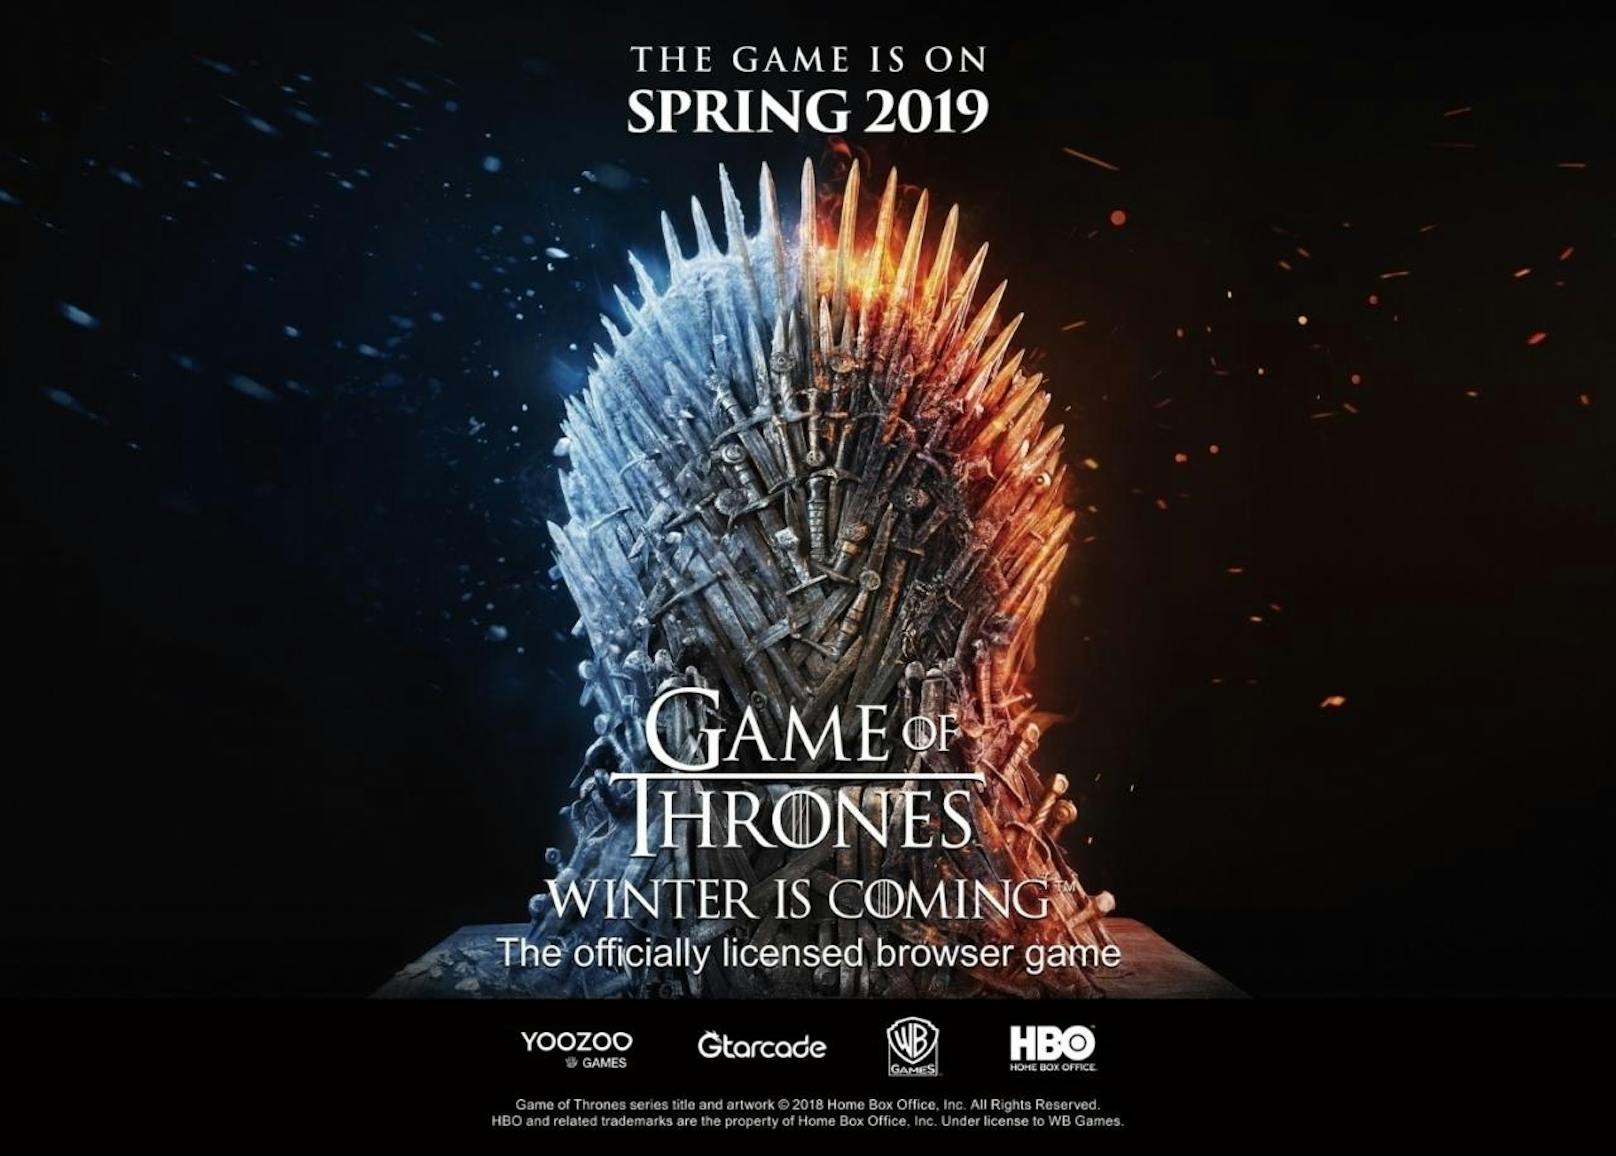 Der chinesische Entwickler und Publisher Yoozoo Games hat auf der Gamescom "Game of Thrones 
Winter Is Coming" angekündigt, ein Browser-Strategiespiel unter offizieller Lizenz von HBO. Fans sollen "ein authentisches Game of Thrones-Spielerlebnis" bekommen. "Game of Thrones Winter Is Coming" erscheint im Frühjahr 2019. Als einer der Lords der Sieben Königreiche gilt es, eine eigene Festung zu errichten und Charaktere sowie Truppen aus dem Universum von Star-Autor George R. R. Martin zu rekrutieren. <a href="http://got.gtarcade.com/">Bereits jetzt können sich interessierte Spieler voranmelden.</a>